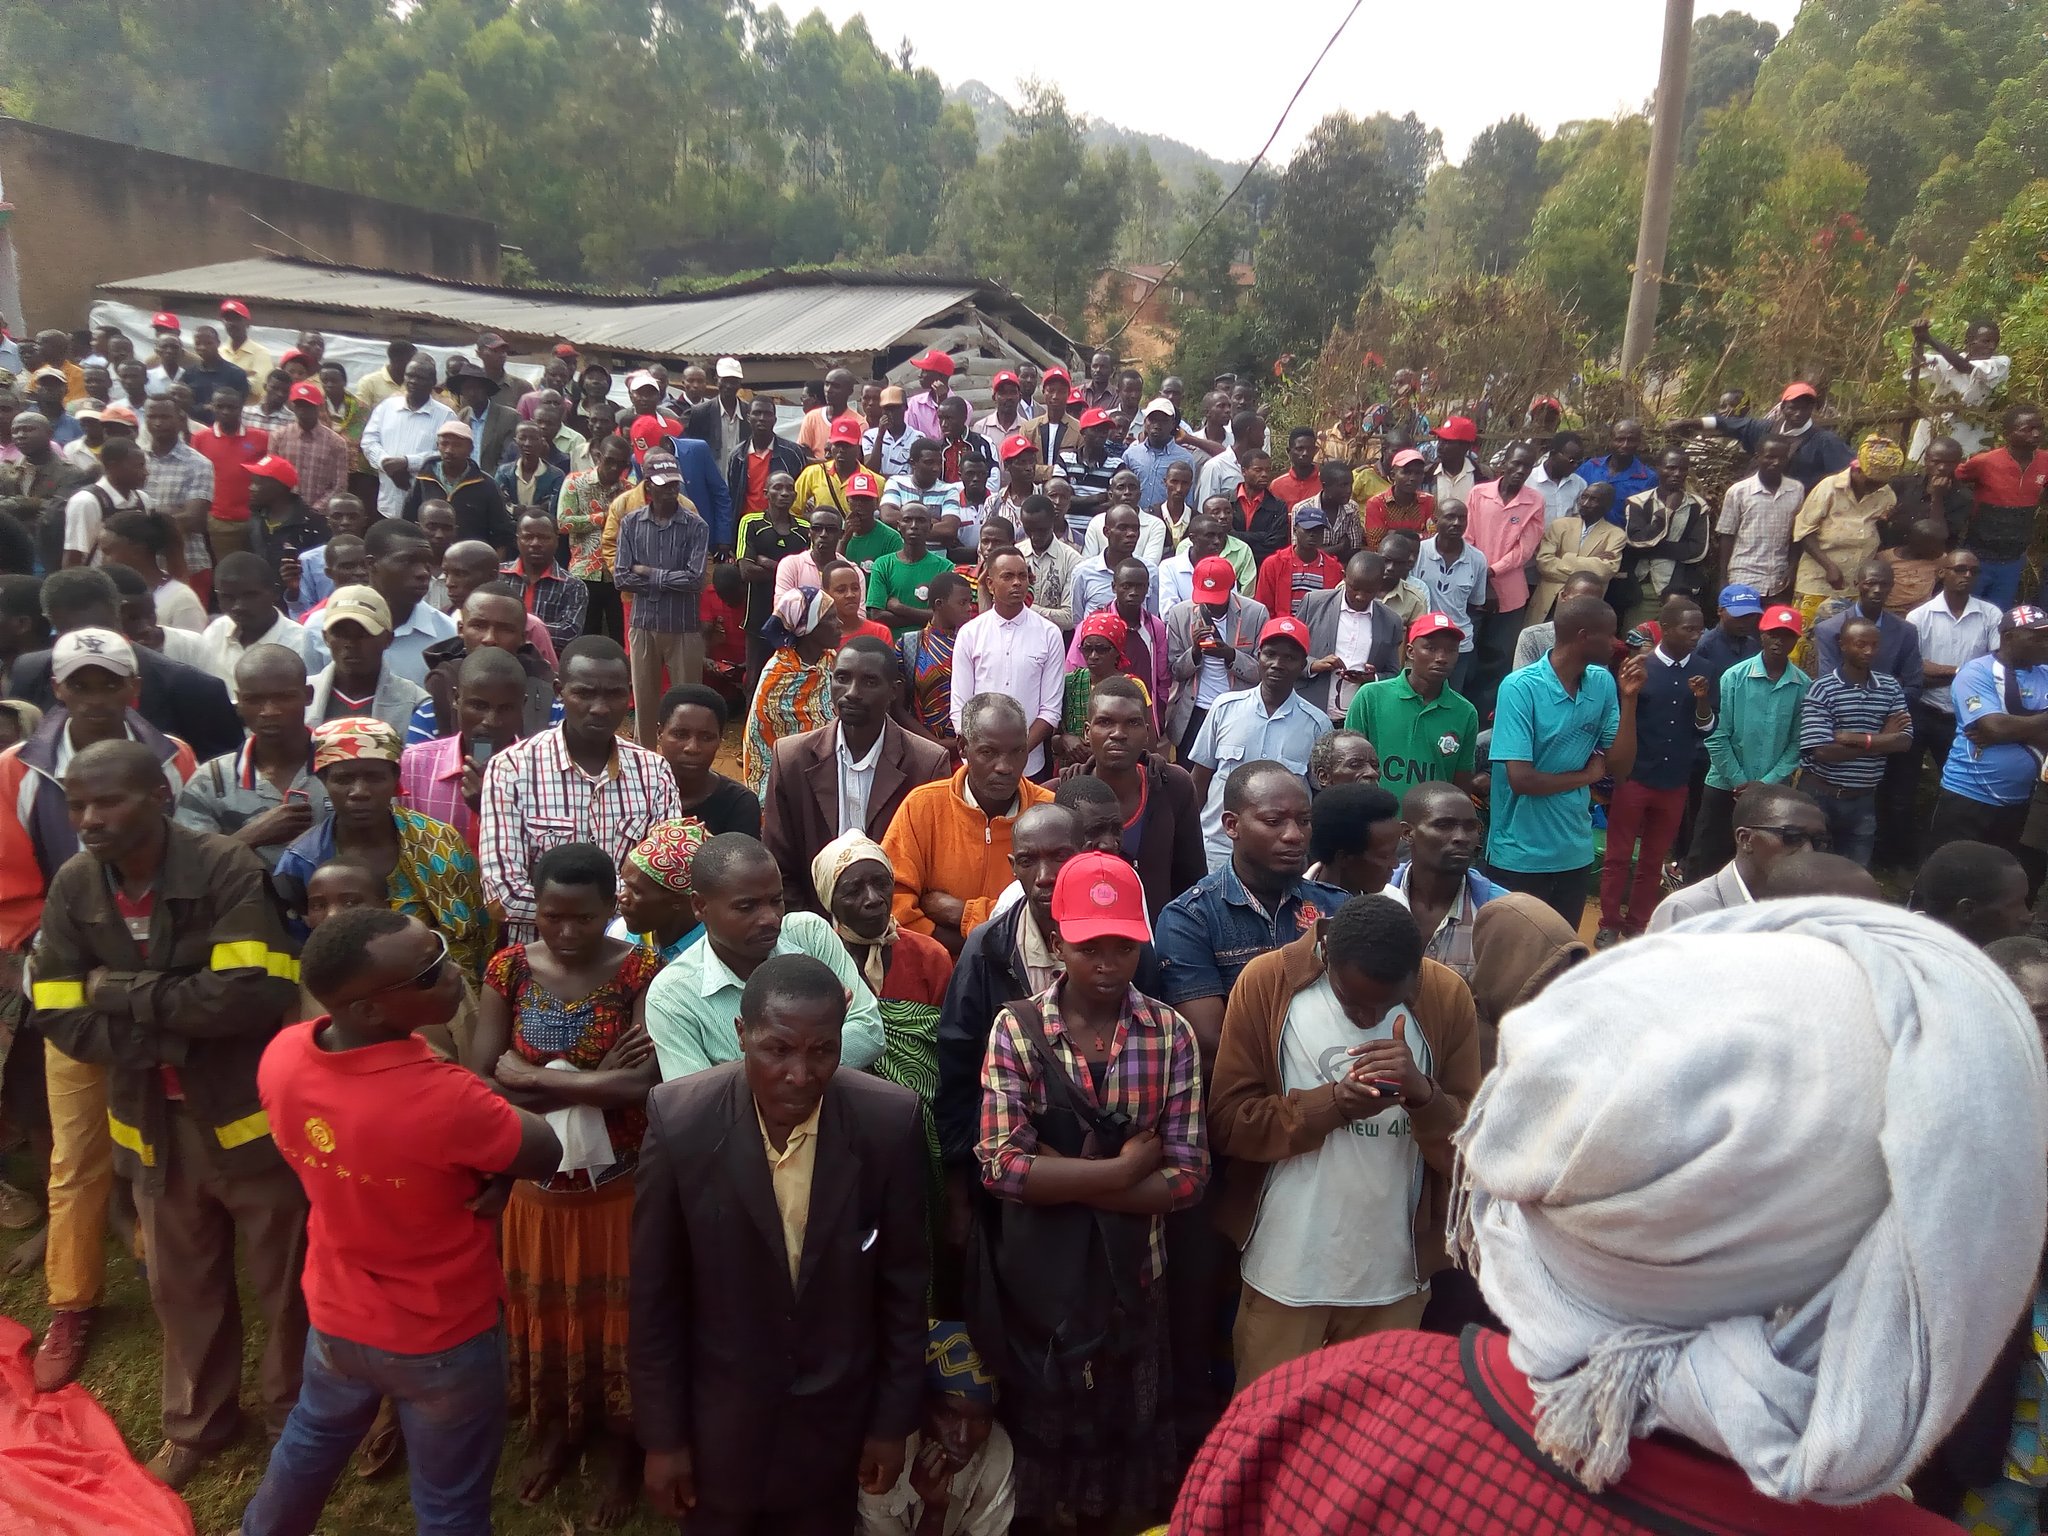 Burundi : Le CNL inaugure sa permanence à Bururi, avec des citoyens méfiants ( Photo : CNL Burundi 2019 )